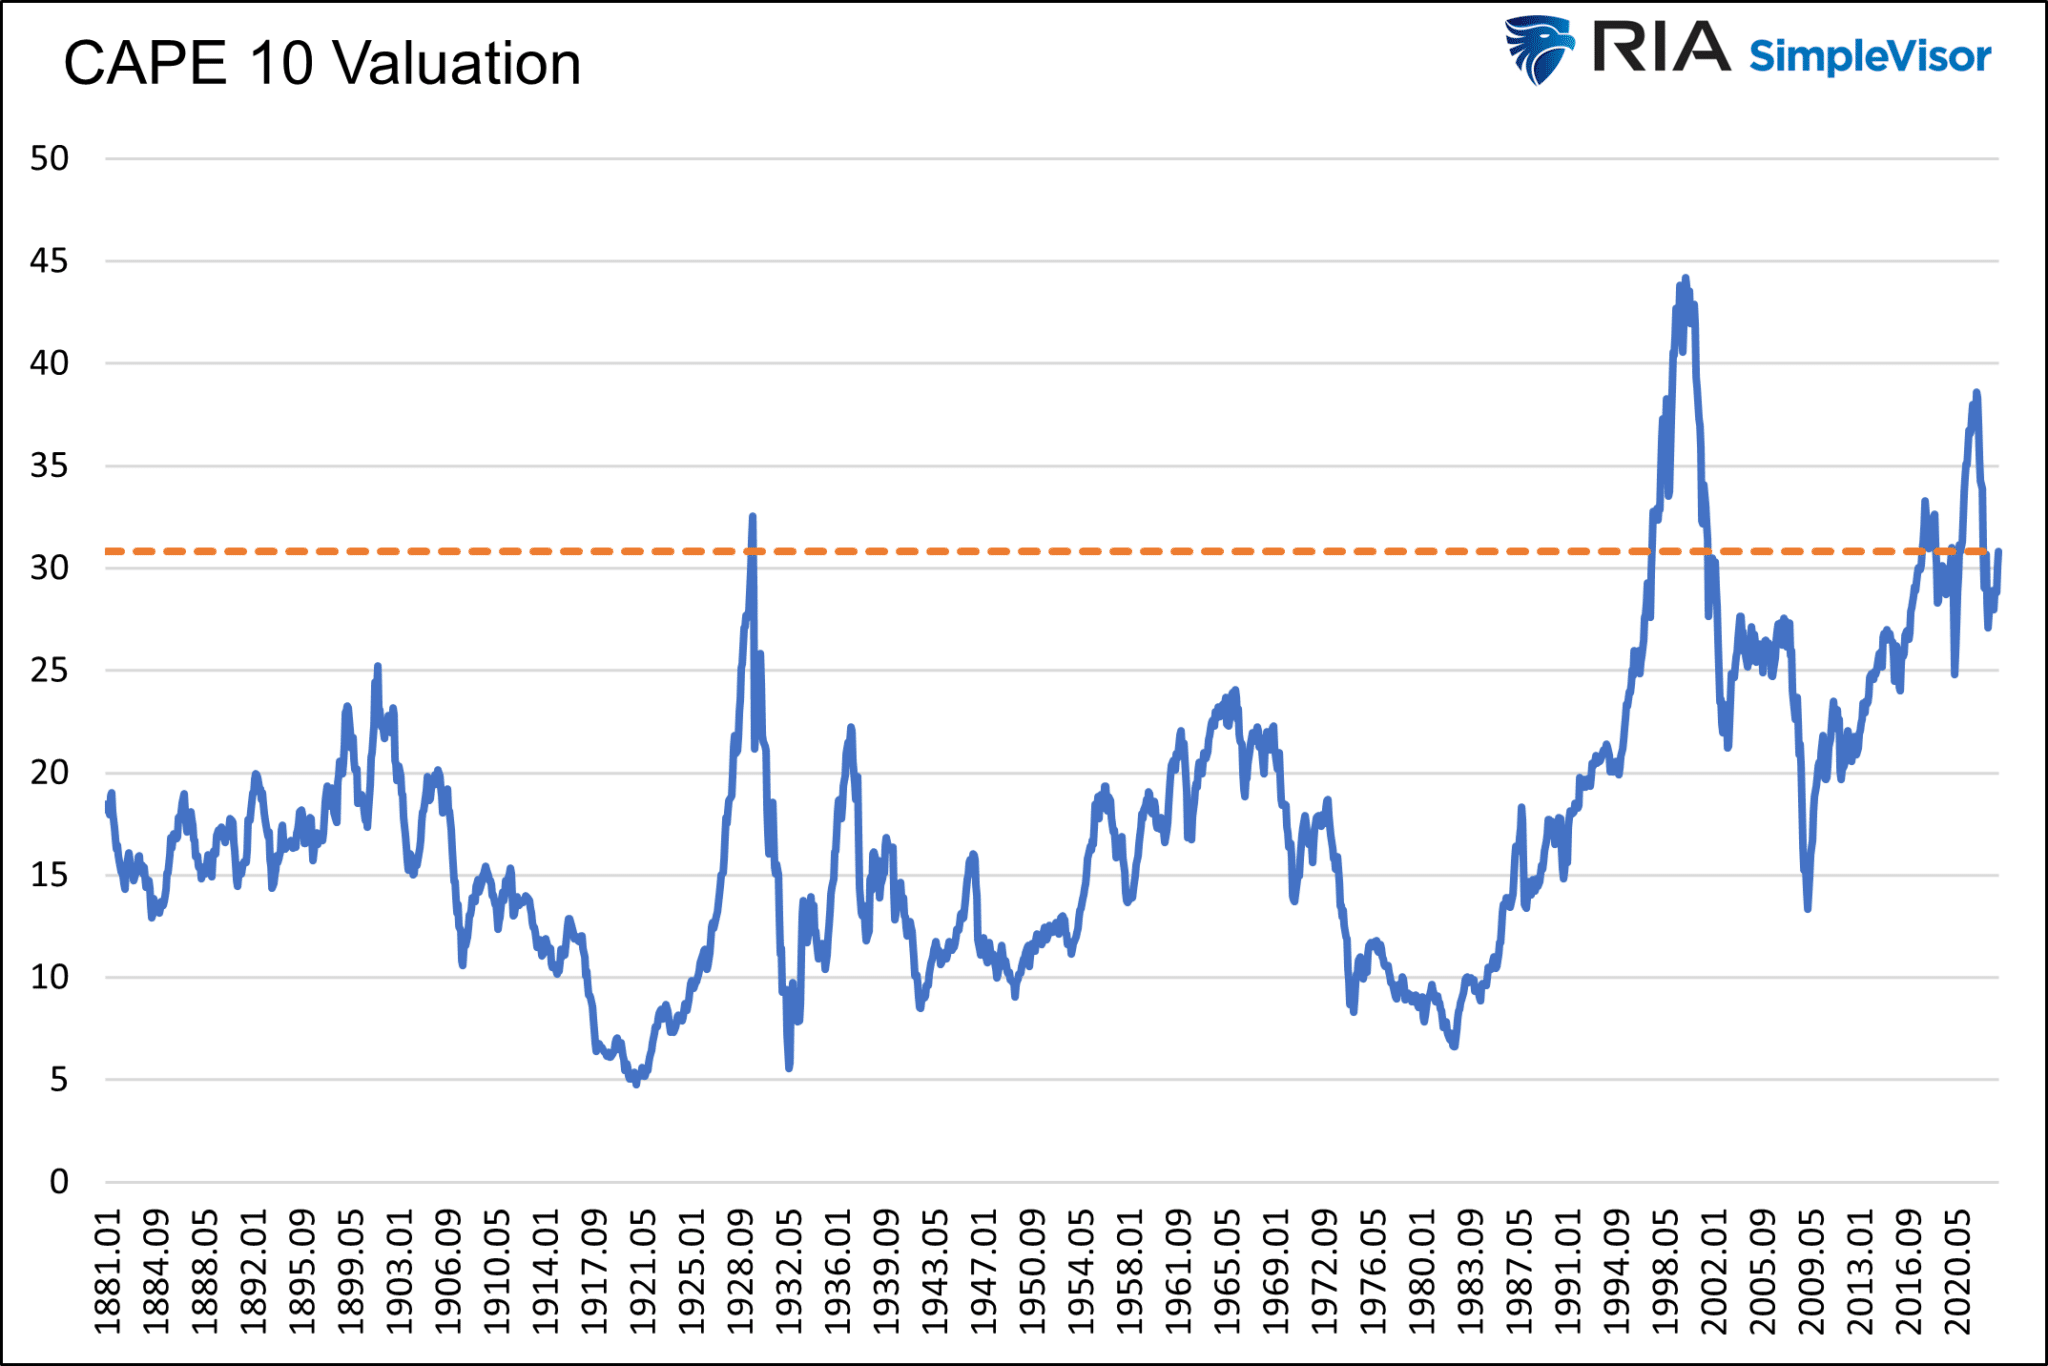 Descripción: CAPE 10 Valuation